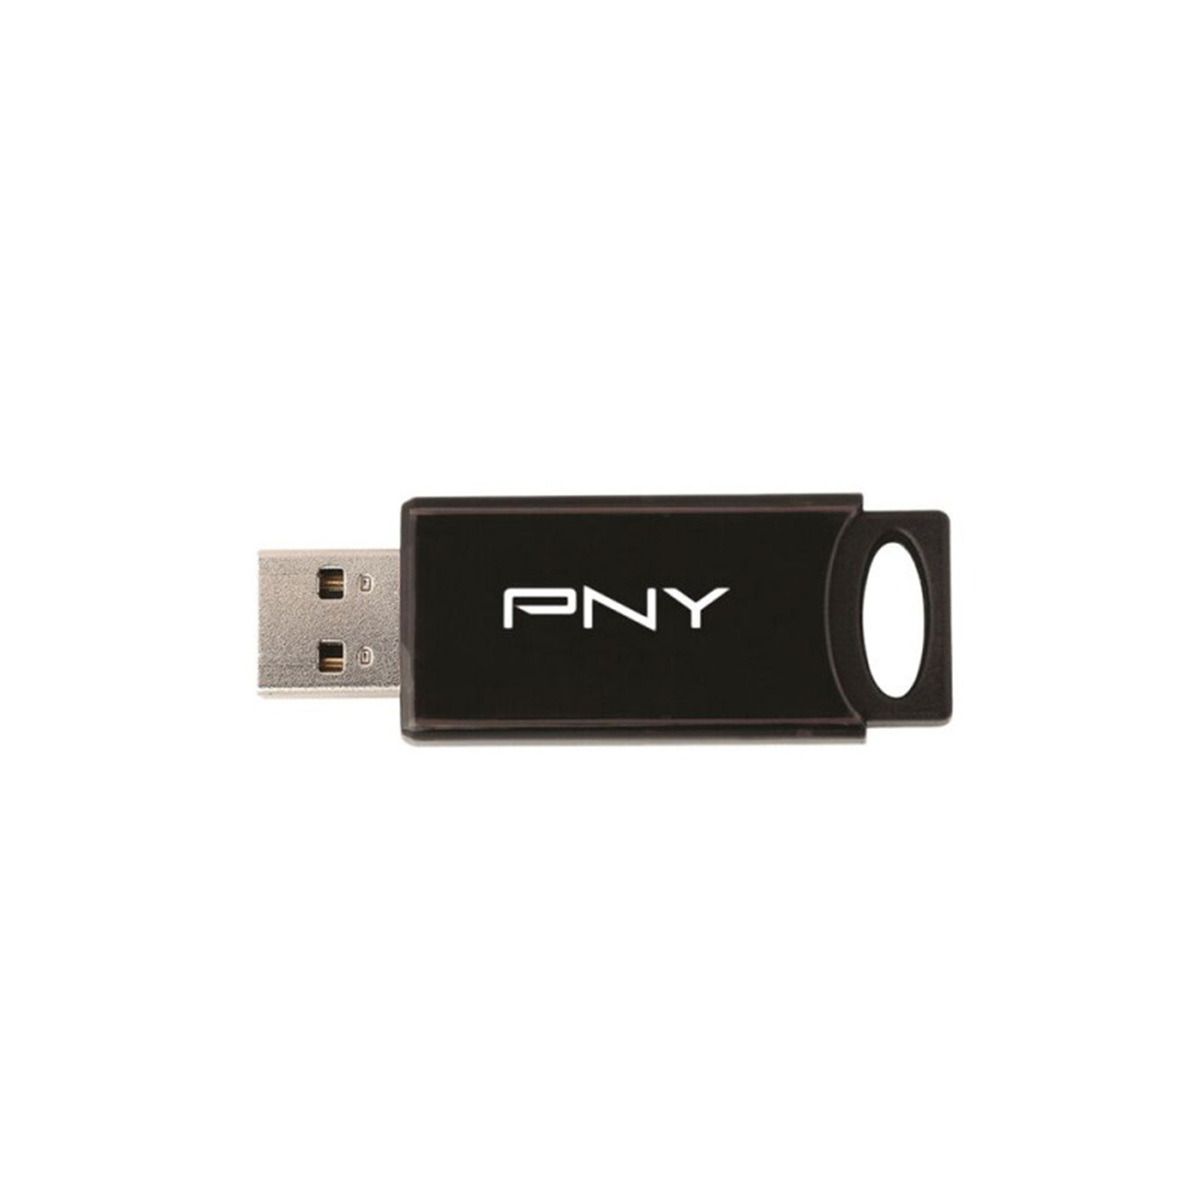 PNY 16GB Attaché 4 USB 2.0 Flash Drive 5-Pack,black